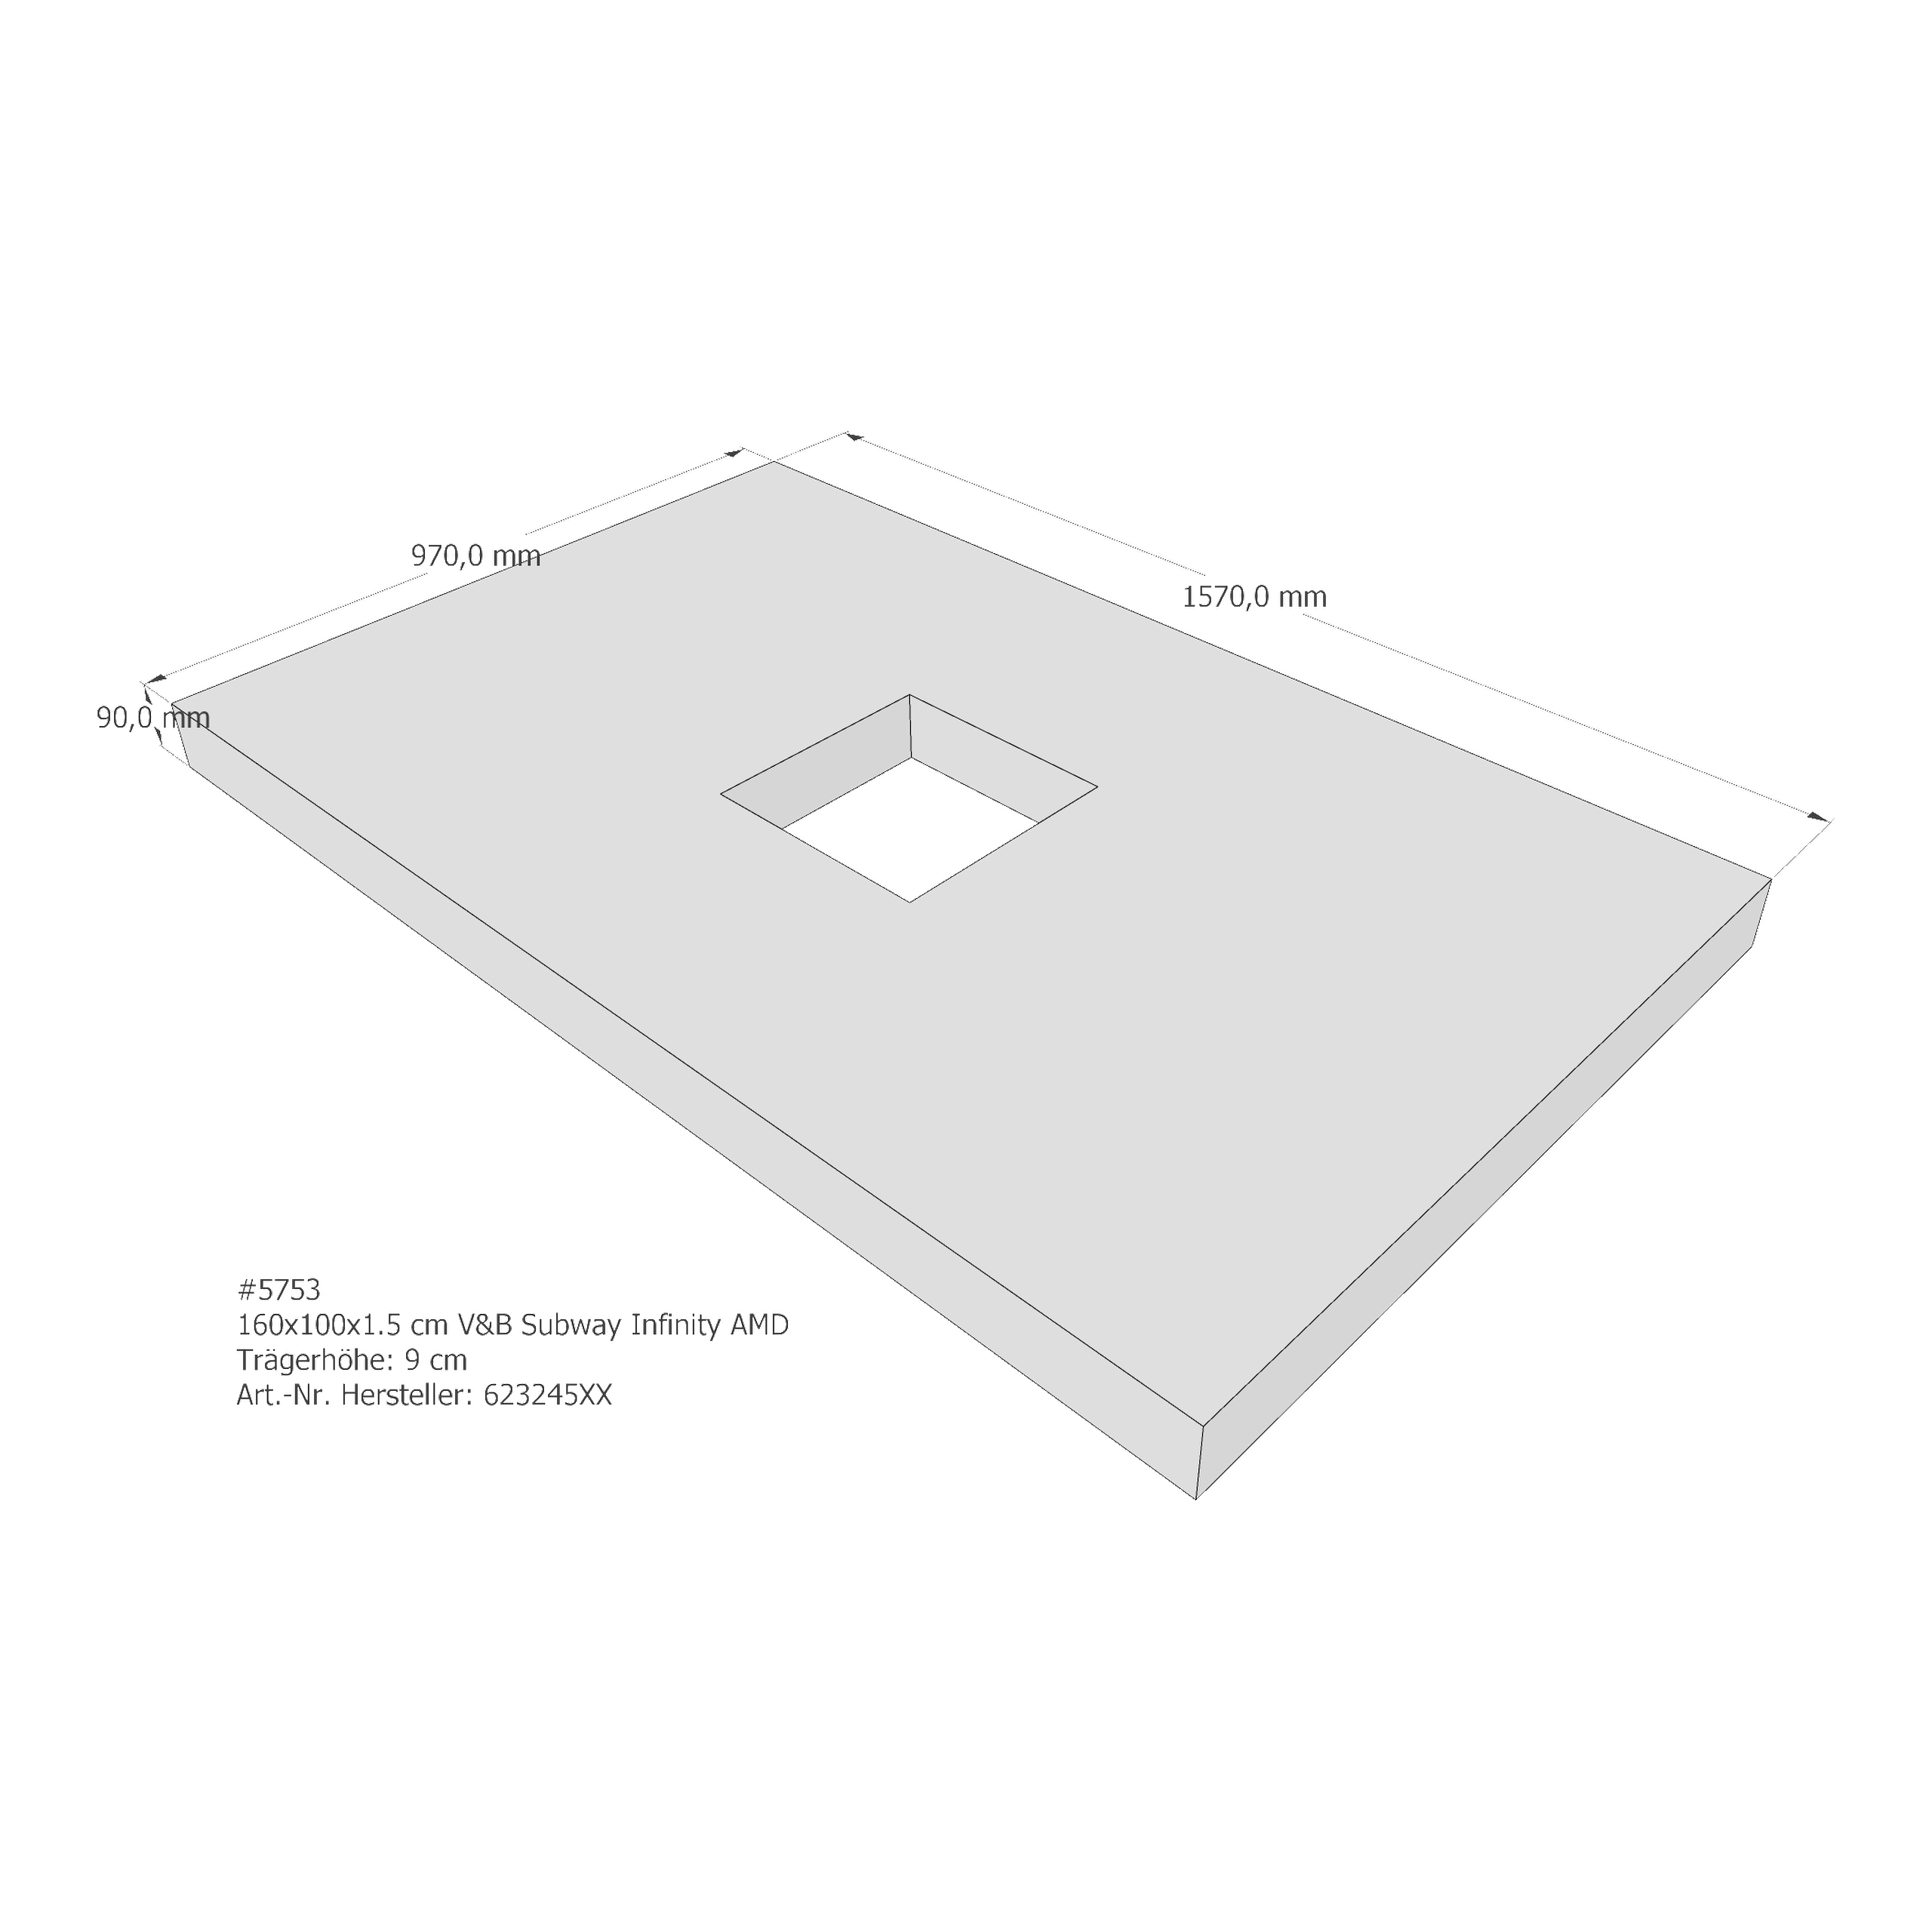 Duschwannenträger für Villeroy & Boch Subway Infinity 160 × 100 × 1,5 cm